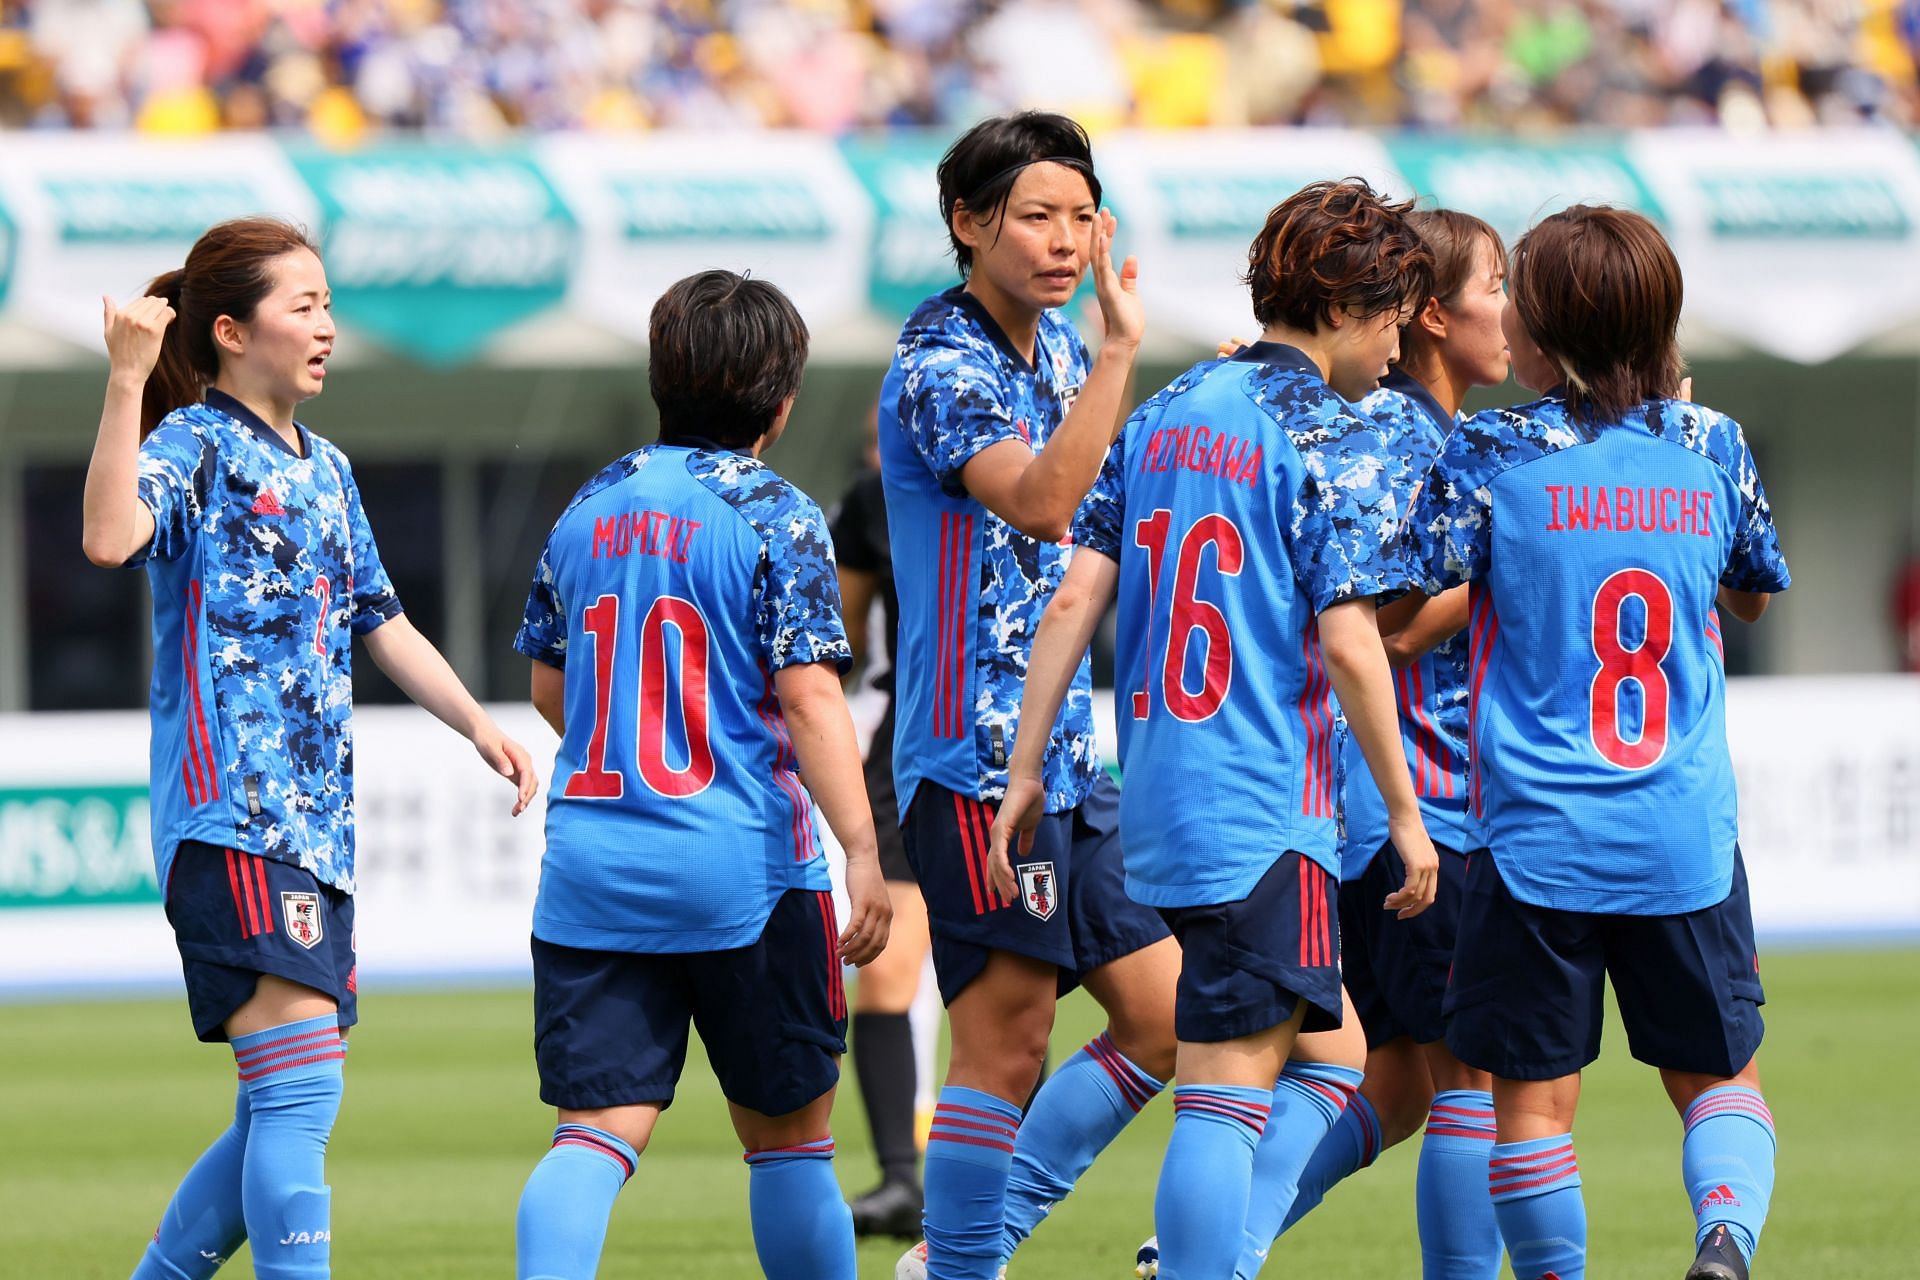 Nadeshiko Japan celebrate a goal